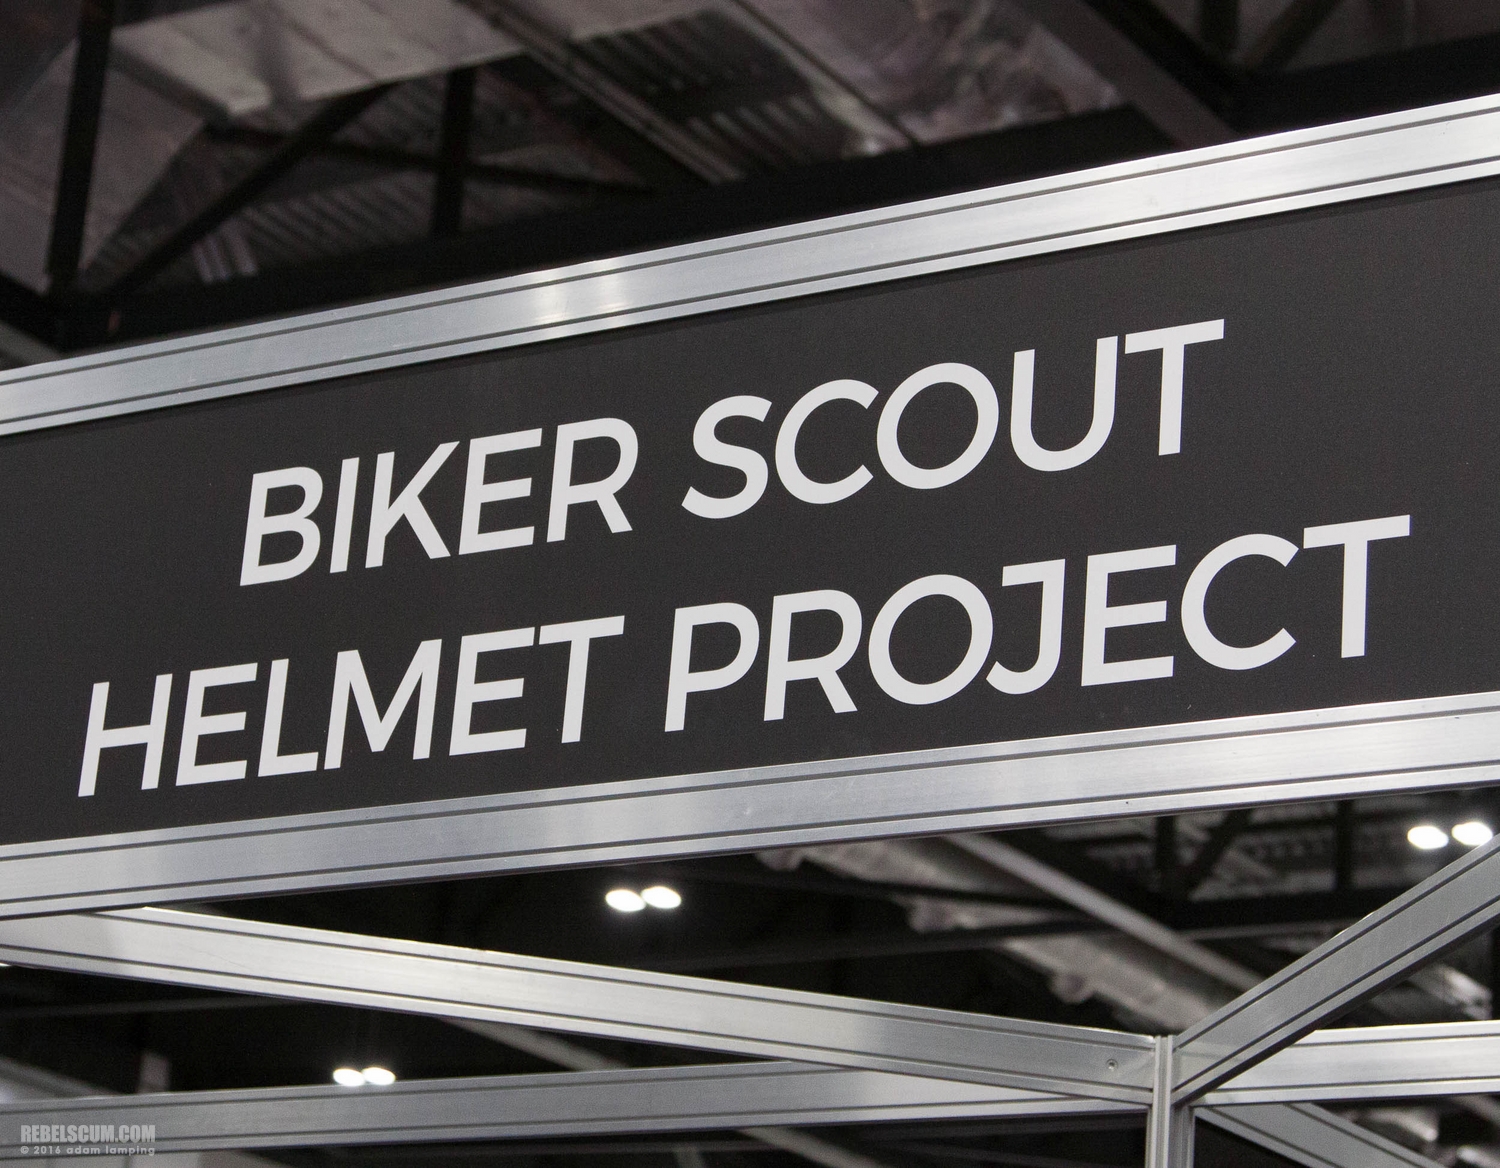 star-wars-celebration-2016-biker-scout-helmet-project-001.jpg